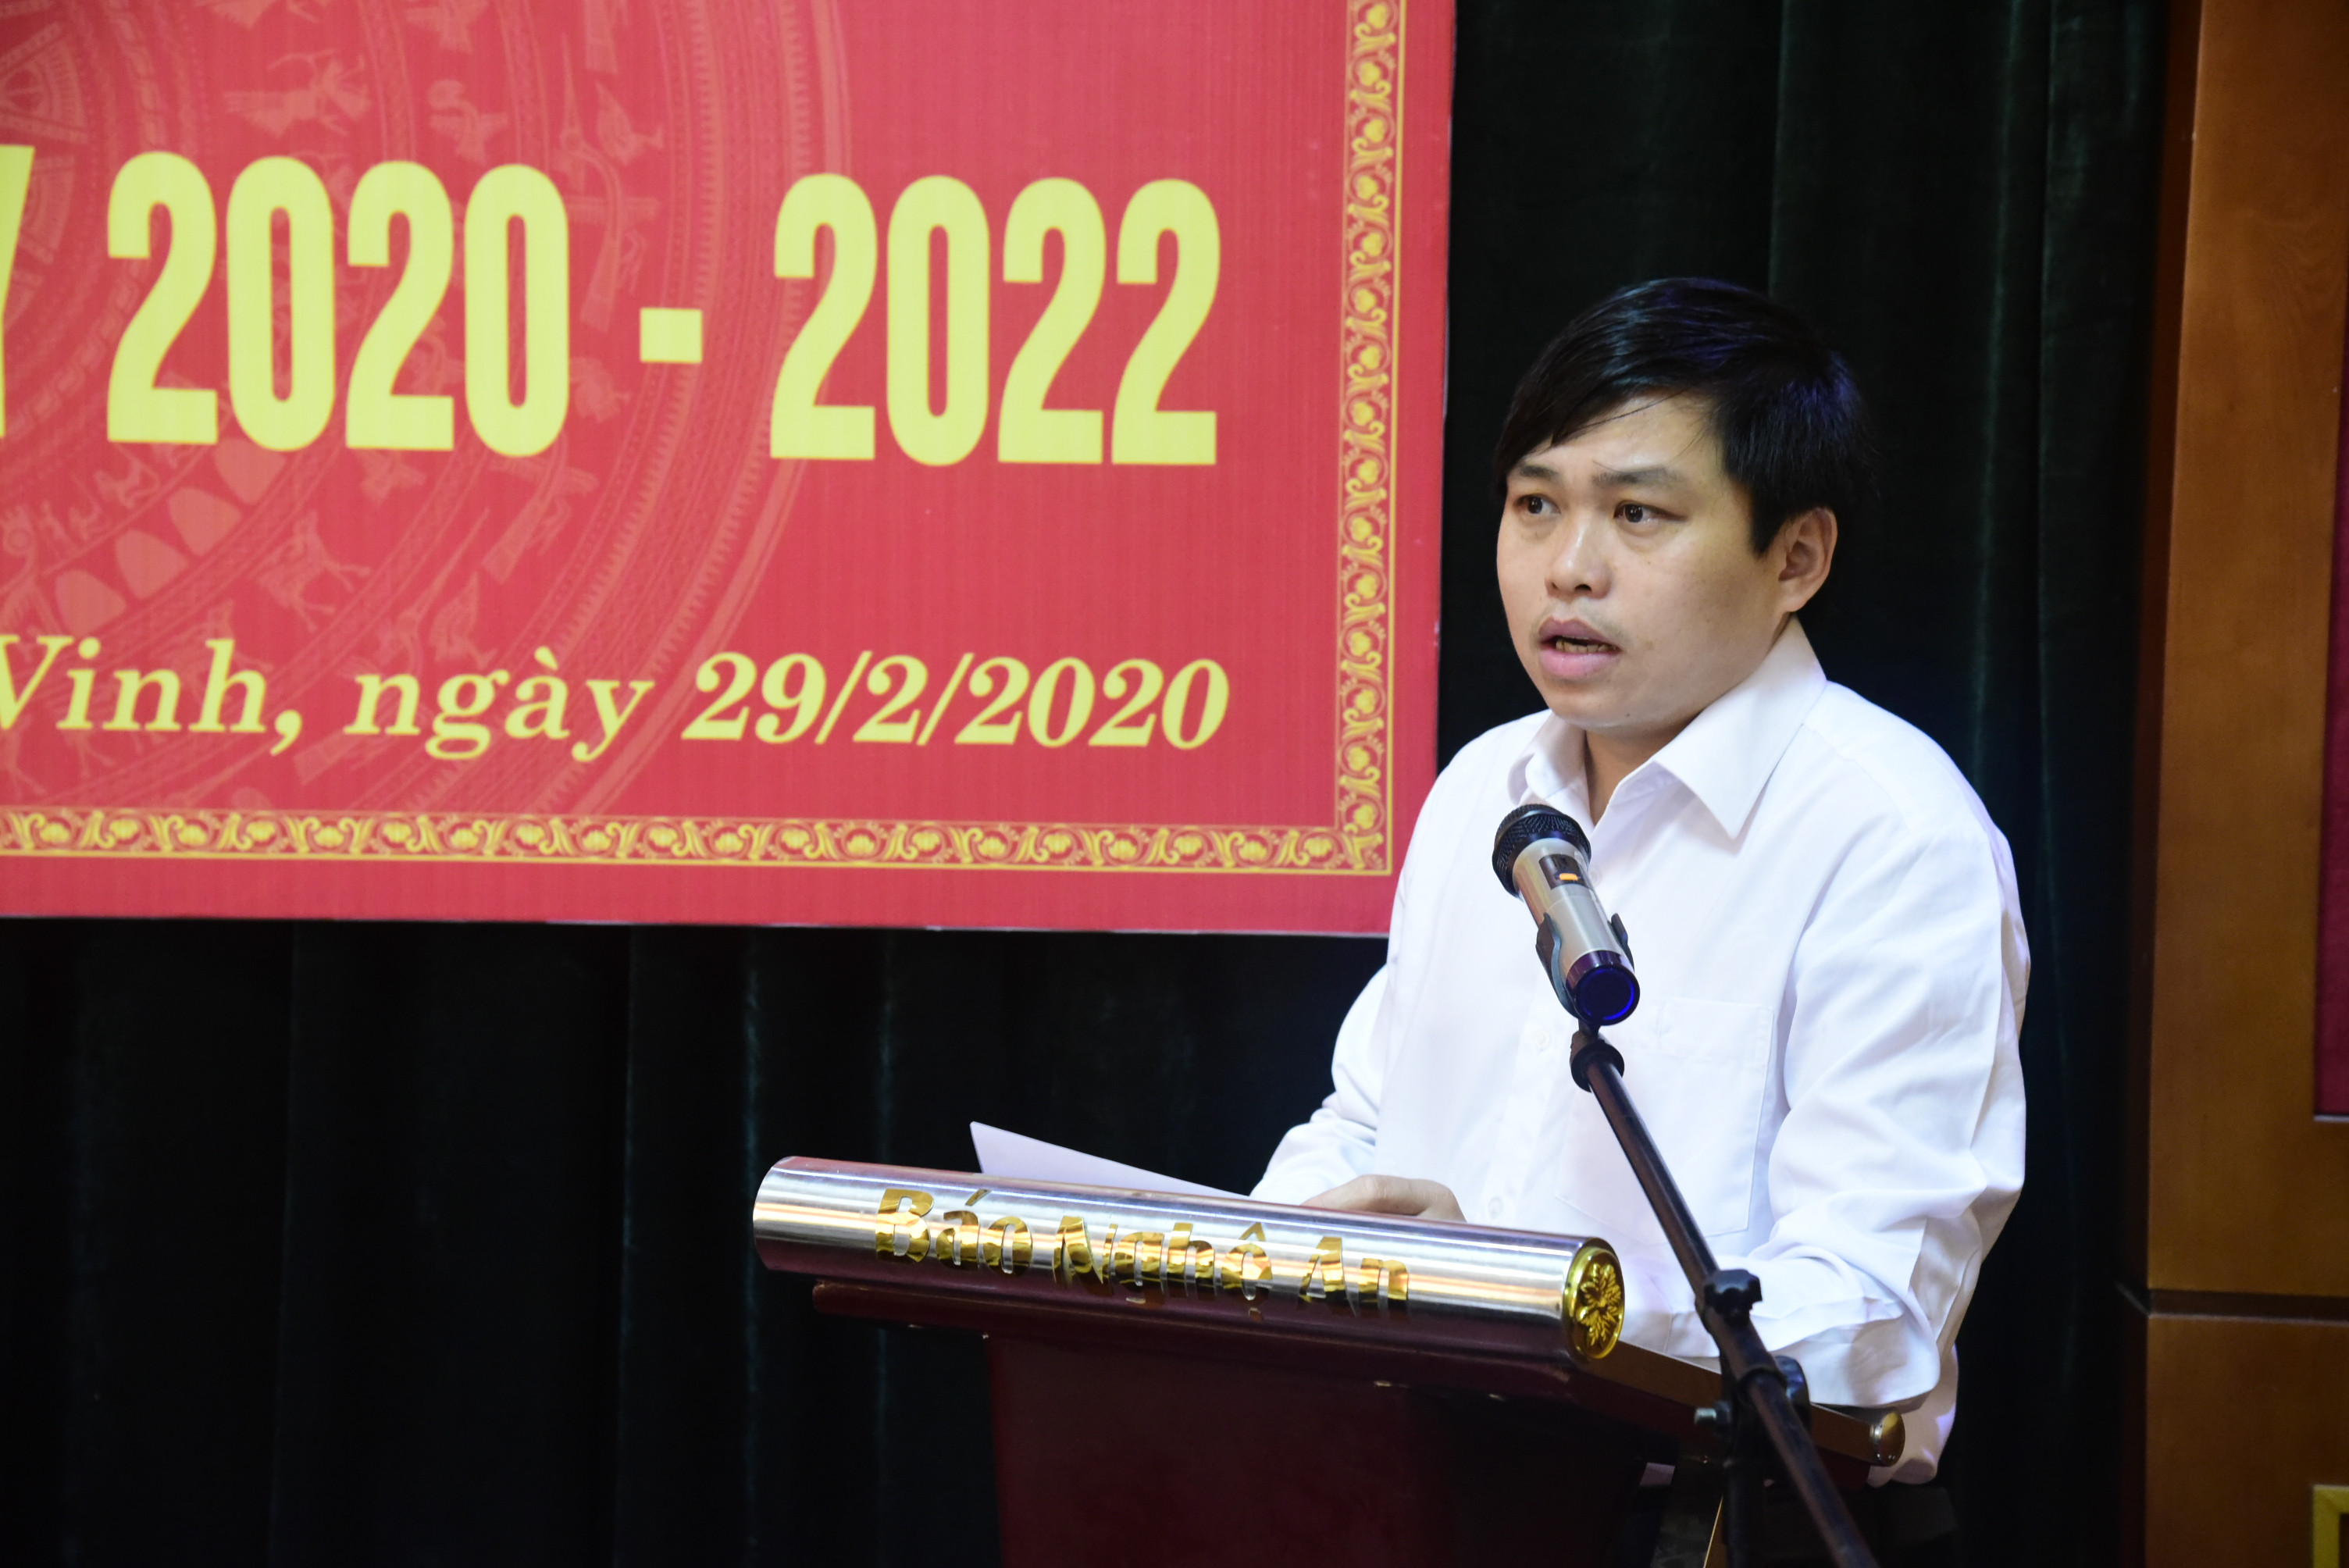 Đồng chí Hà Nguyên Khoa phát biểu đóng góp ý kiến tại Đại hội.